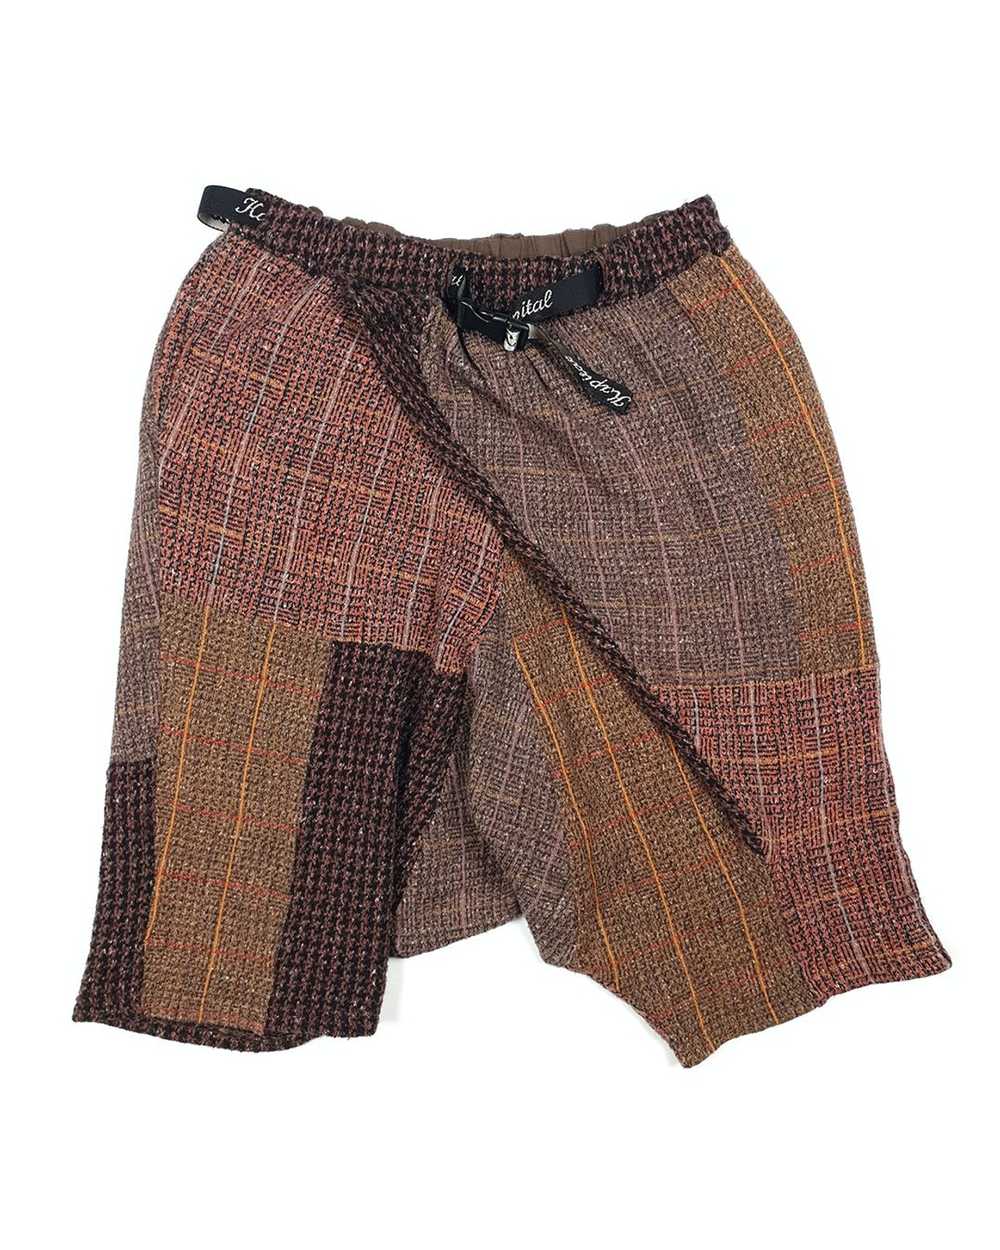 Kapital Reconstructed Wool Shorts - image 1